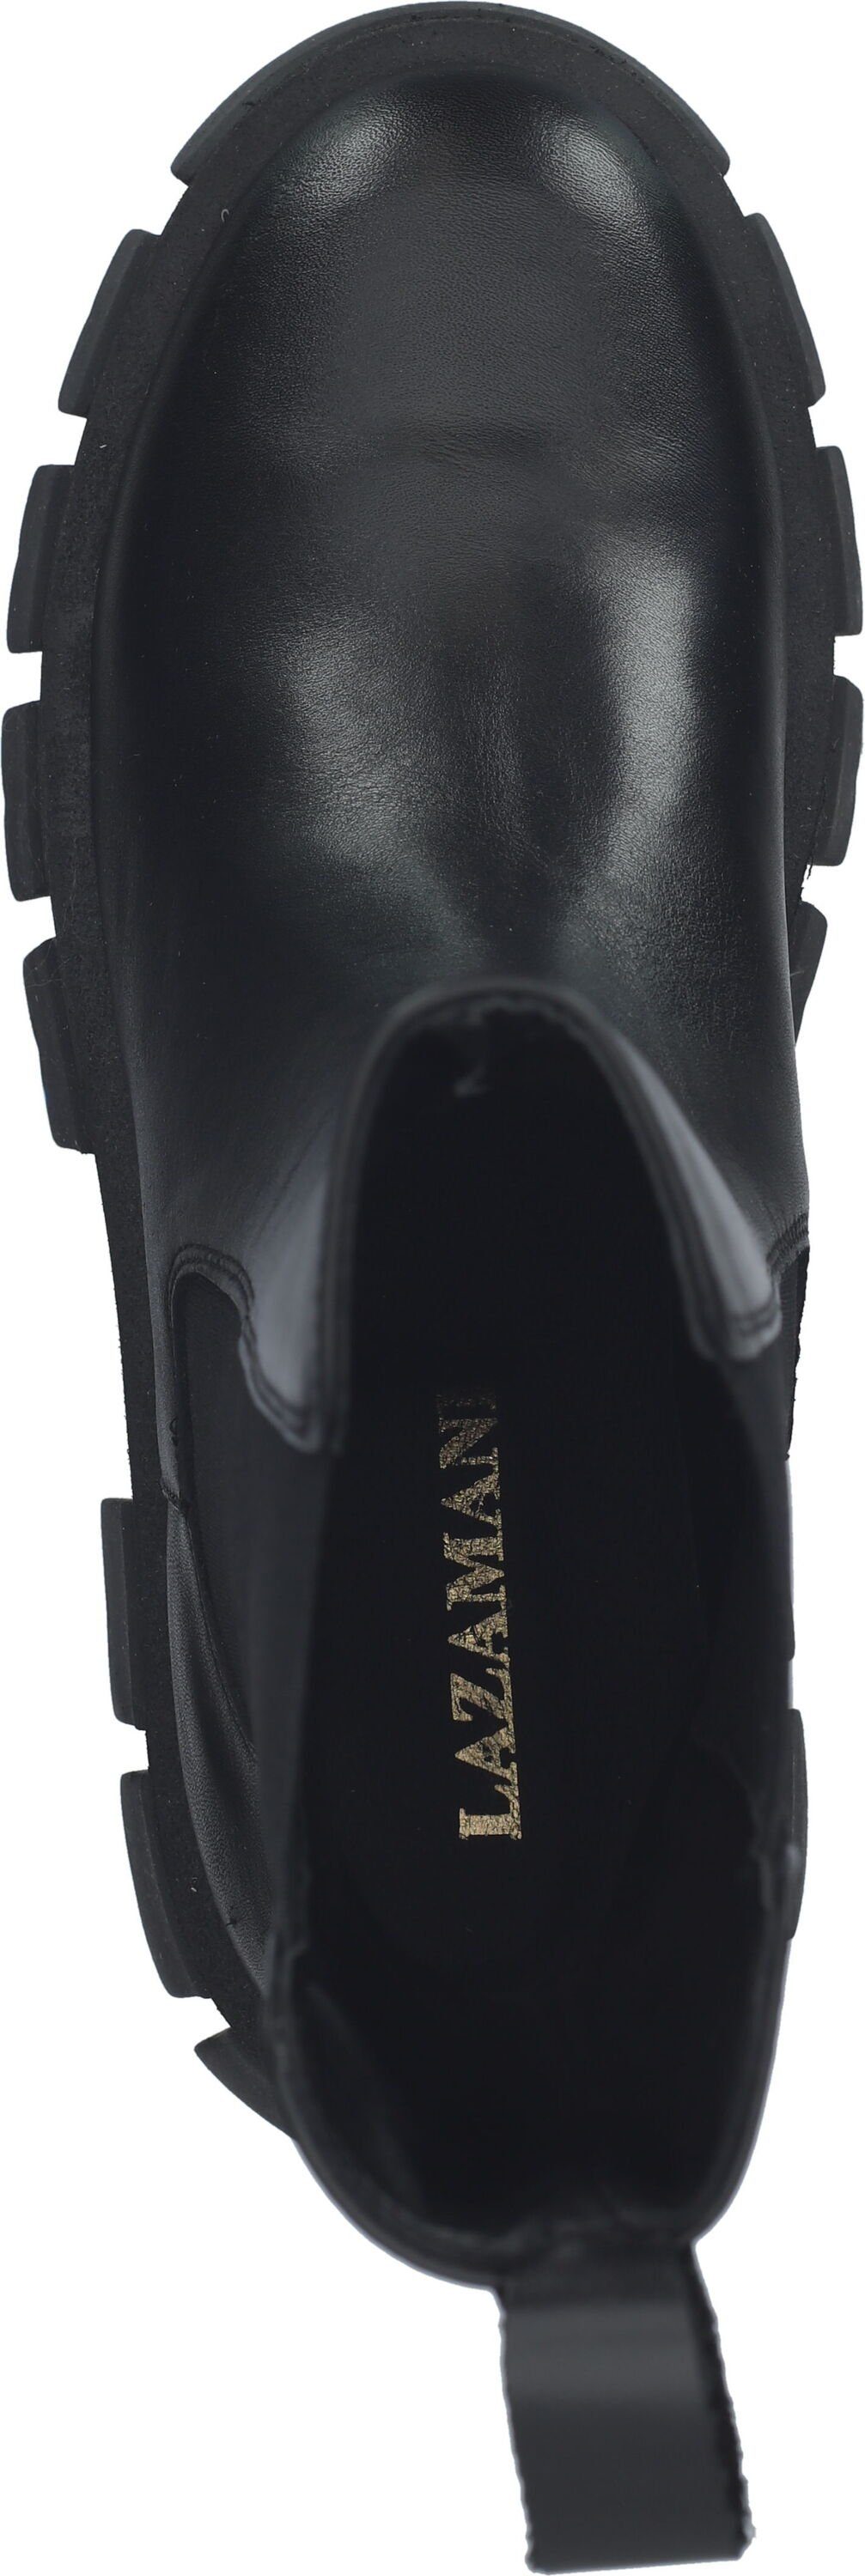 Schuhe Stiefeletten Lazamani Stiefelette Leder/Textil Stiefelette